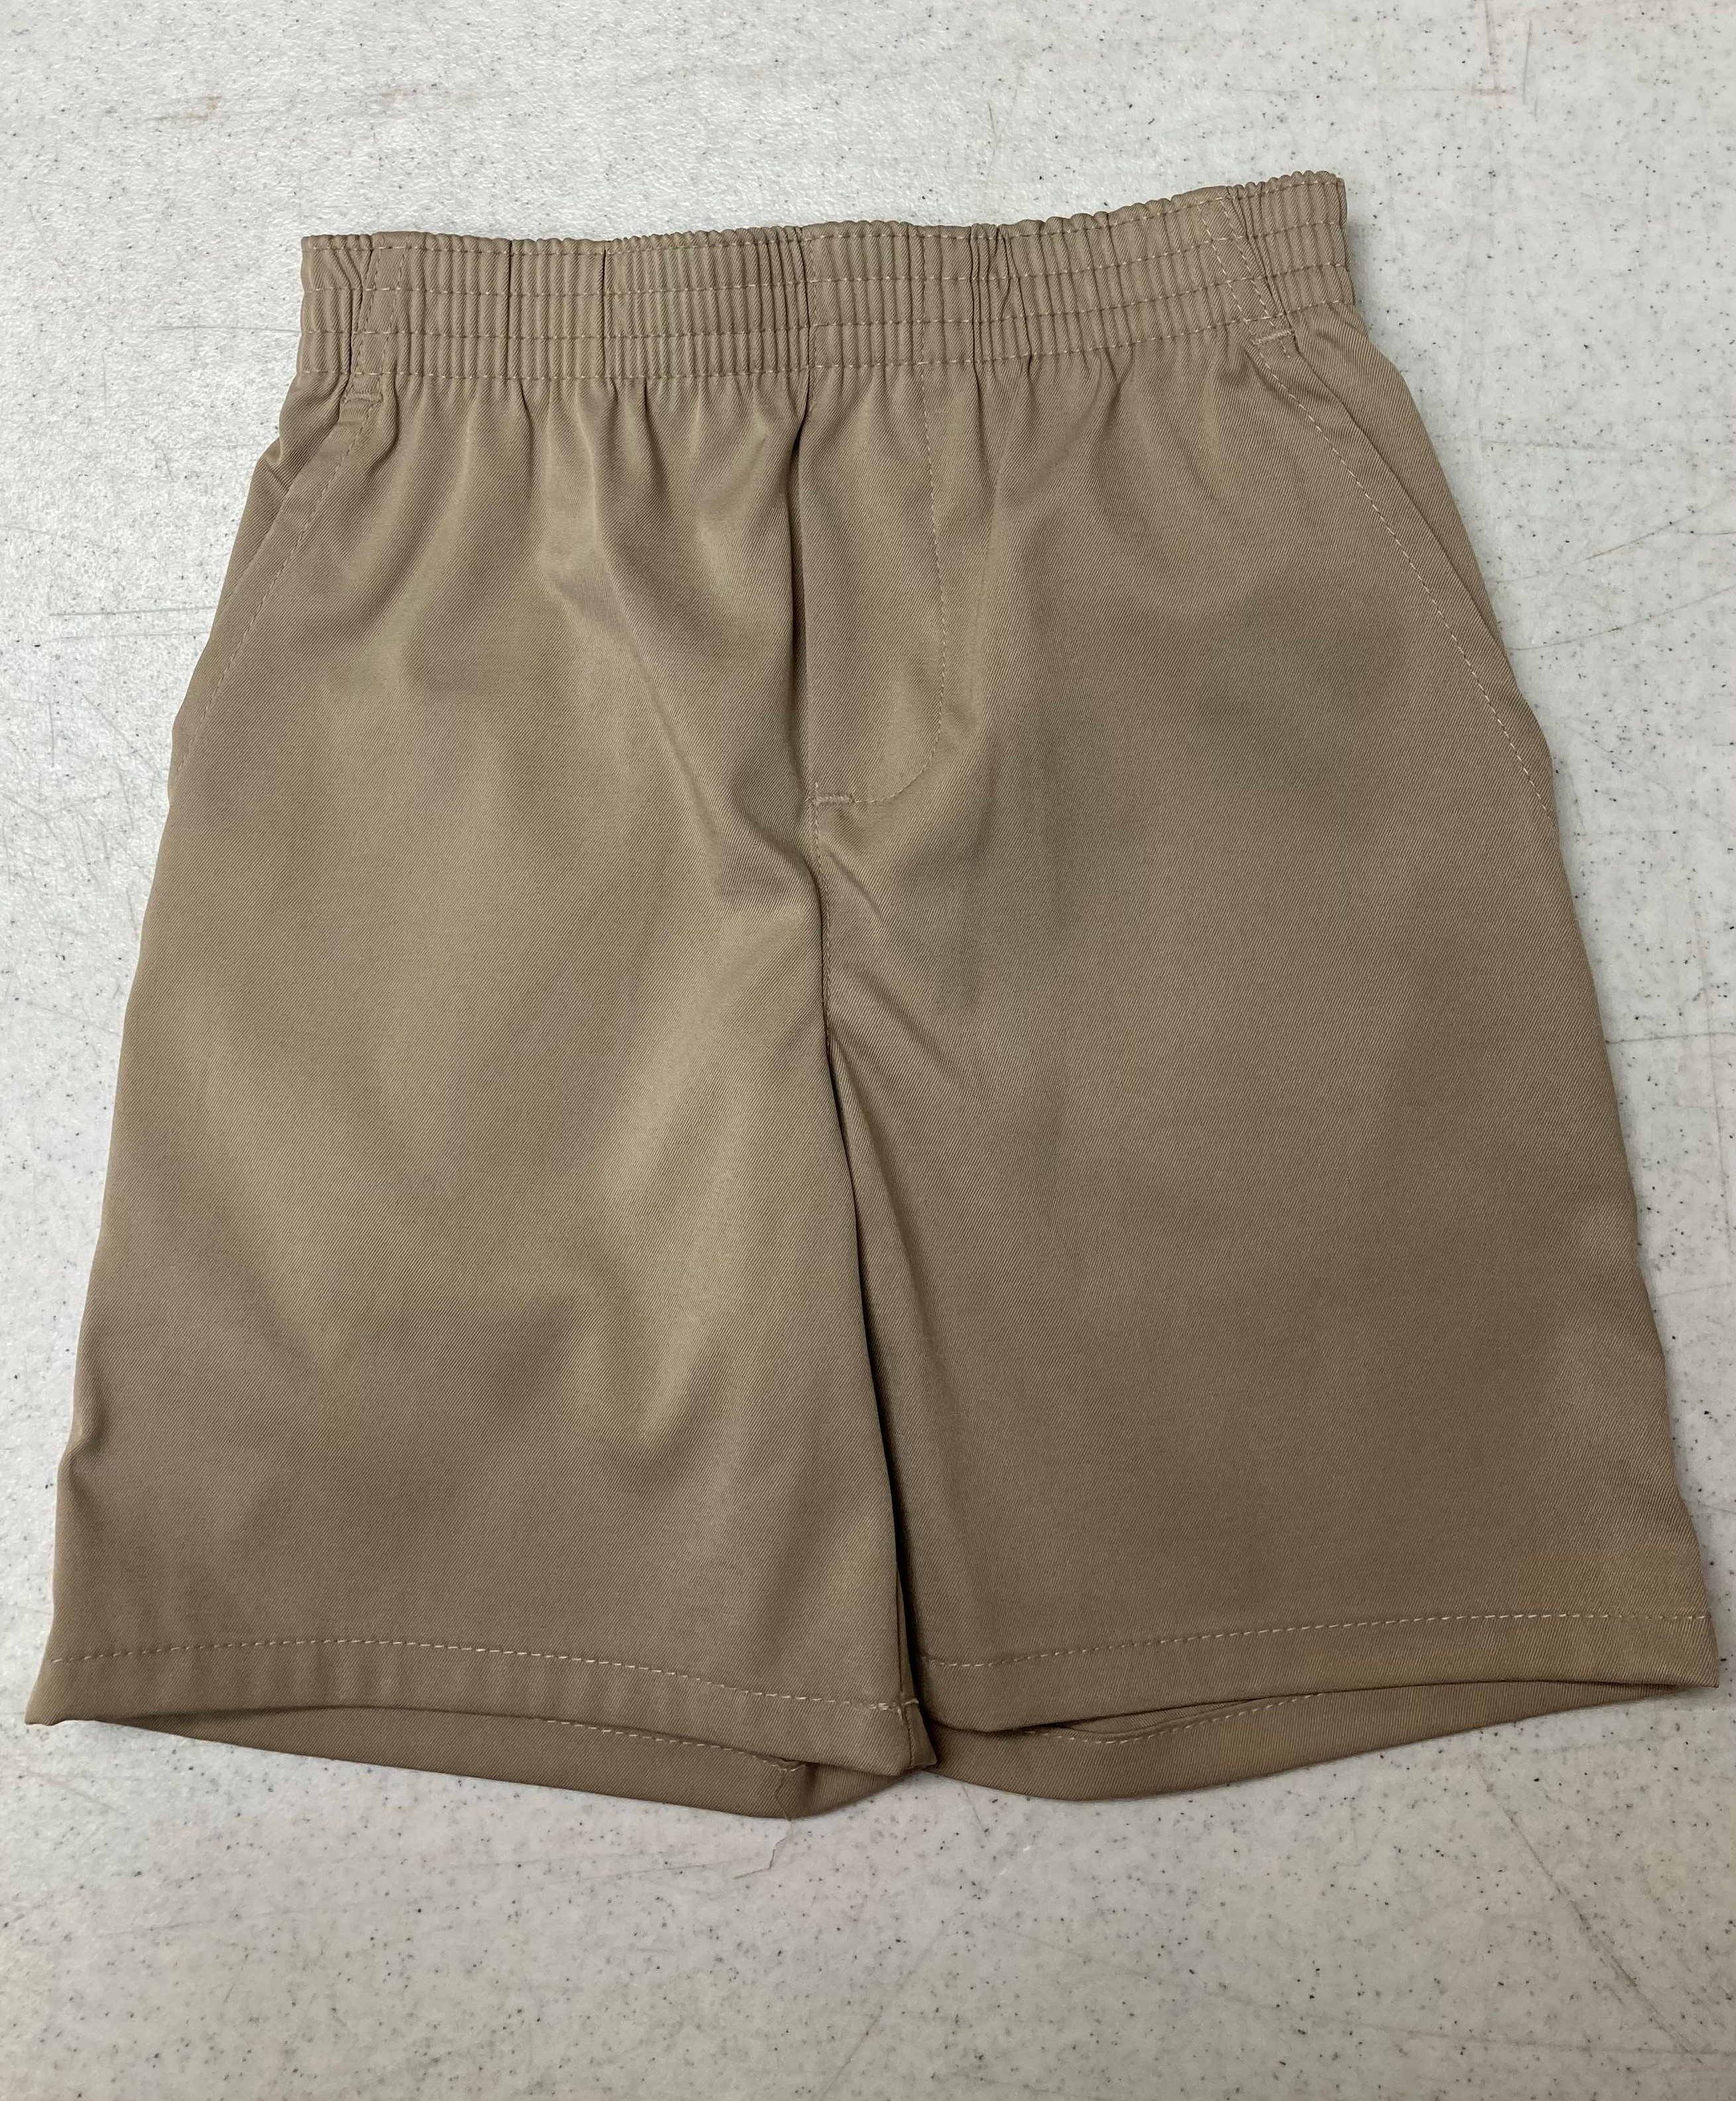 SFCA DRI FIT Pull-on Shorts